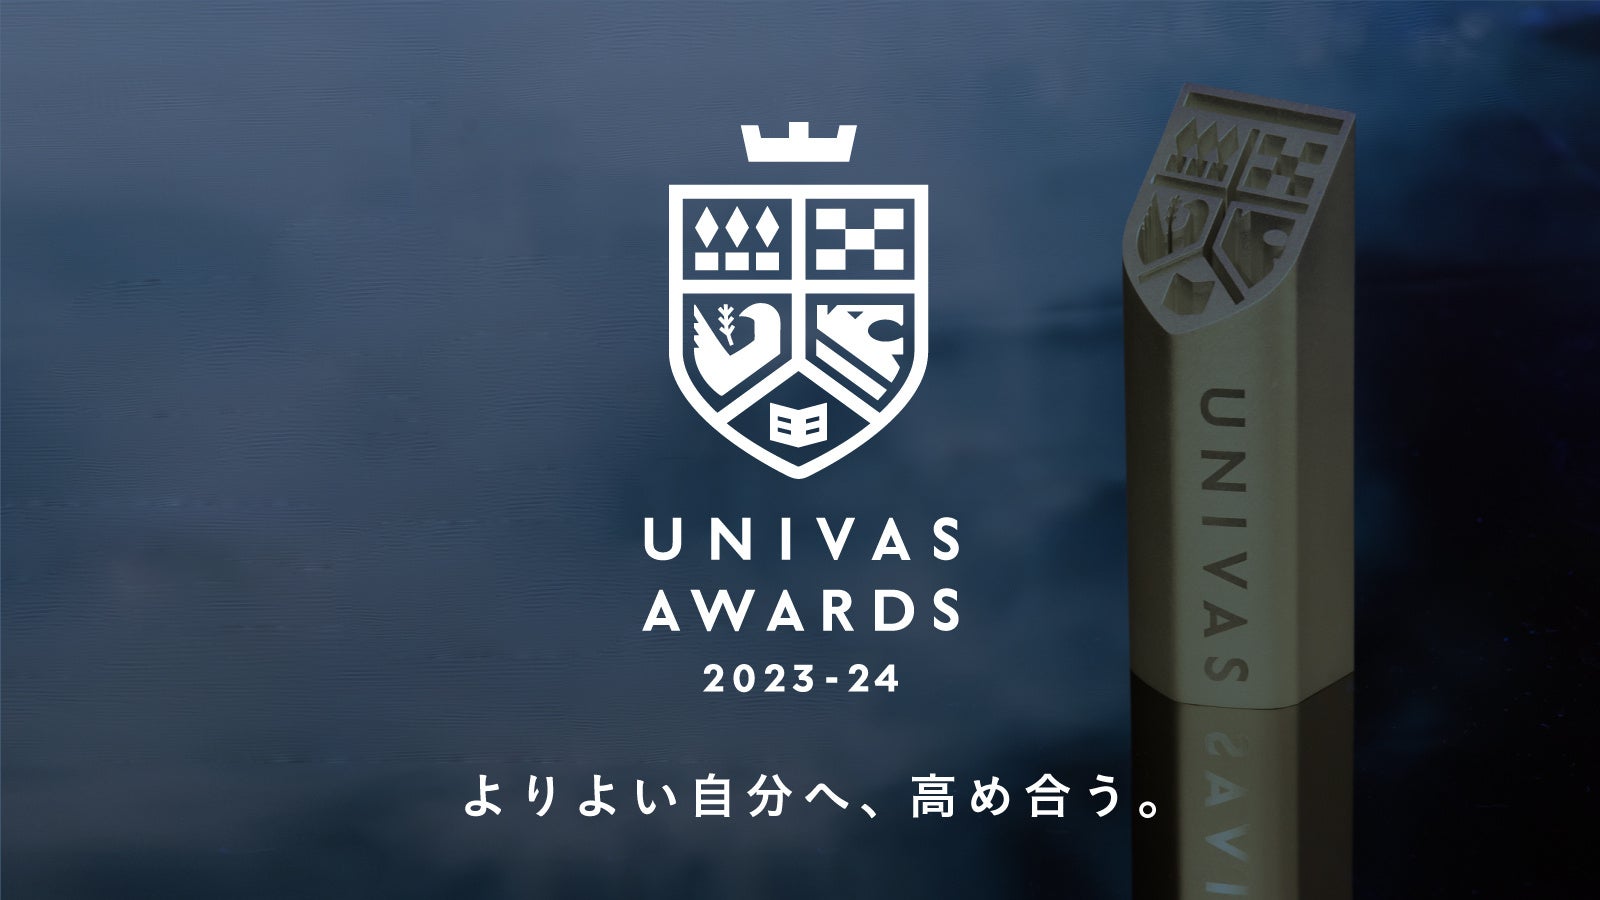 UNIVAS、大学スポーツ振興に貢献した運動部学生やスポーツに関わる学生、団体を表彰する「UNIVAS AWARDS 2023-24」のエントリー開始！